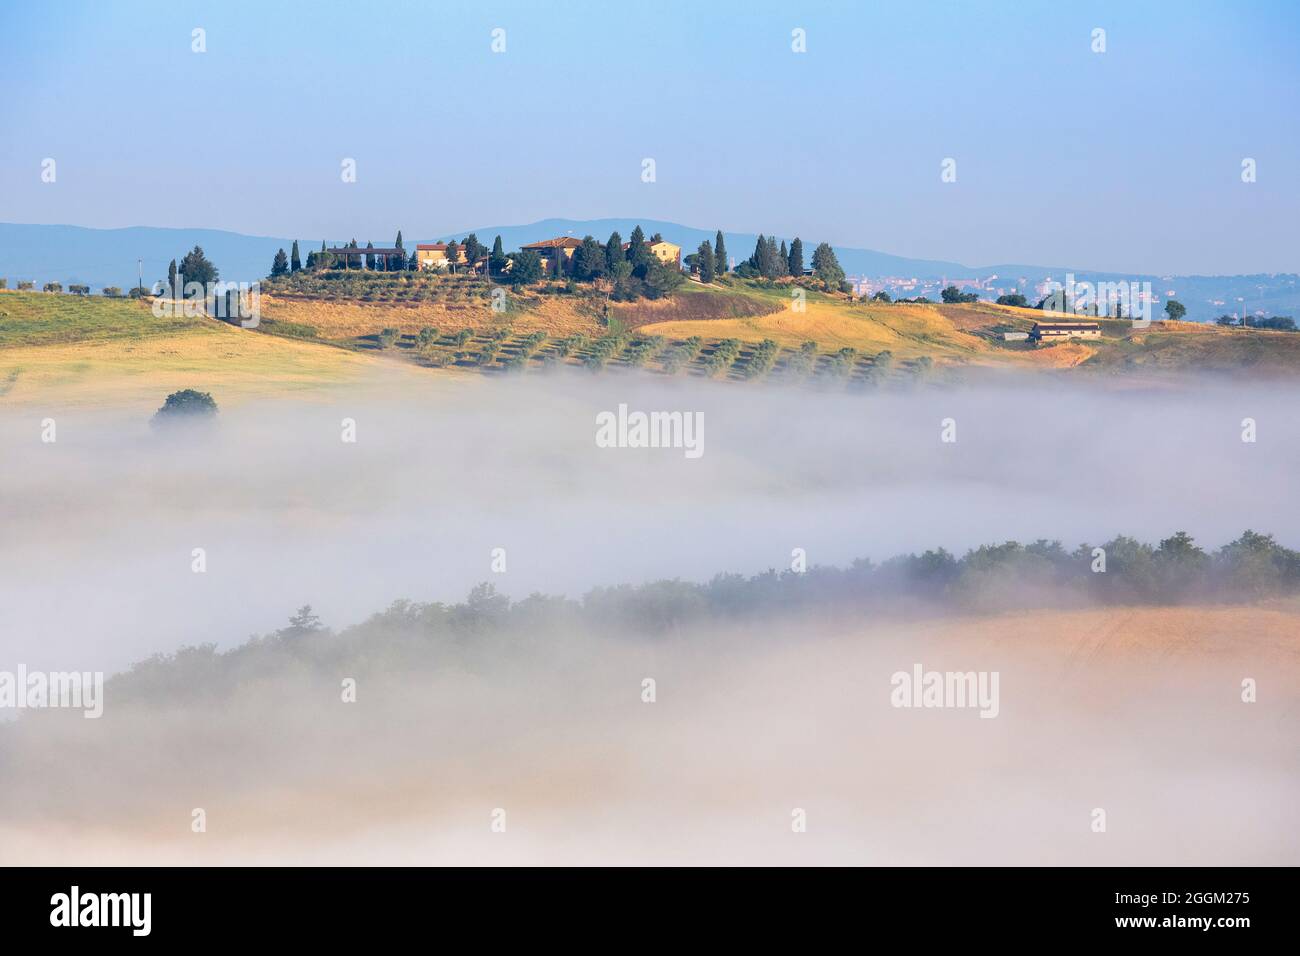 Typische toskanische Landschaft, morgens mit Nebel in den Tälern und sanften Hügeln der Crete Senesi, asciano, Provinz siena, toskana, italien Stockfoto